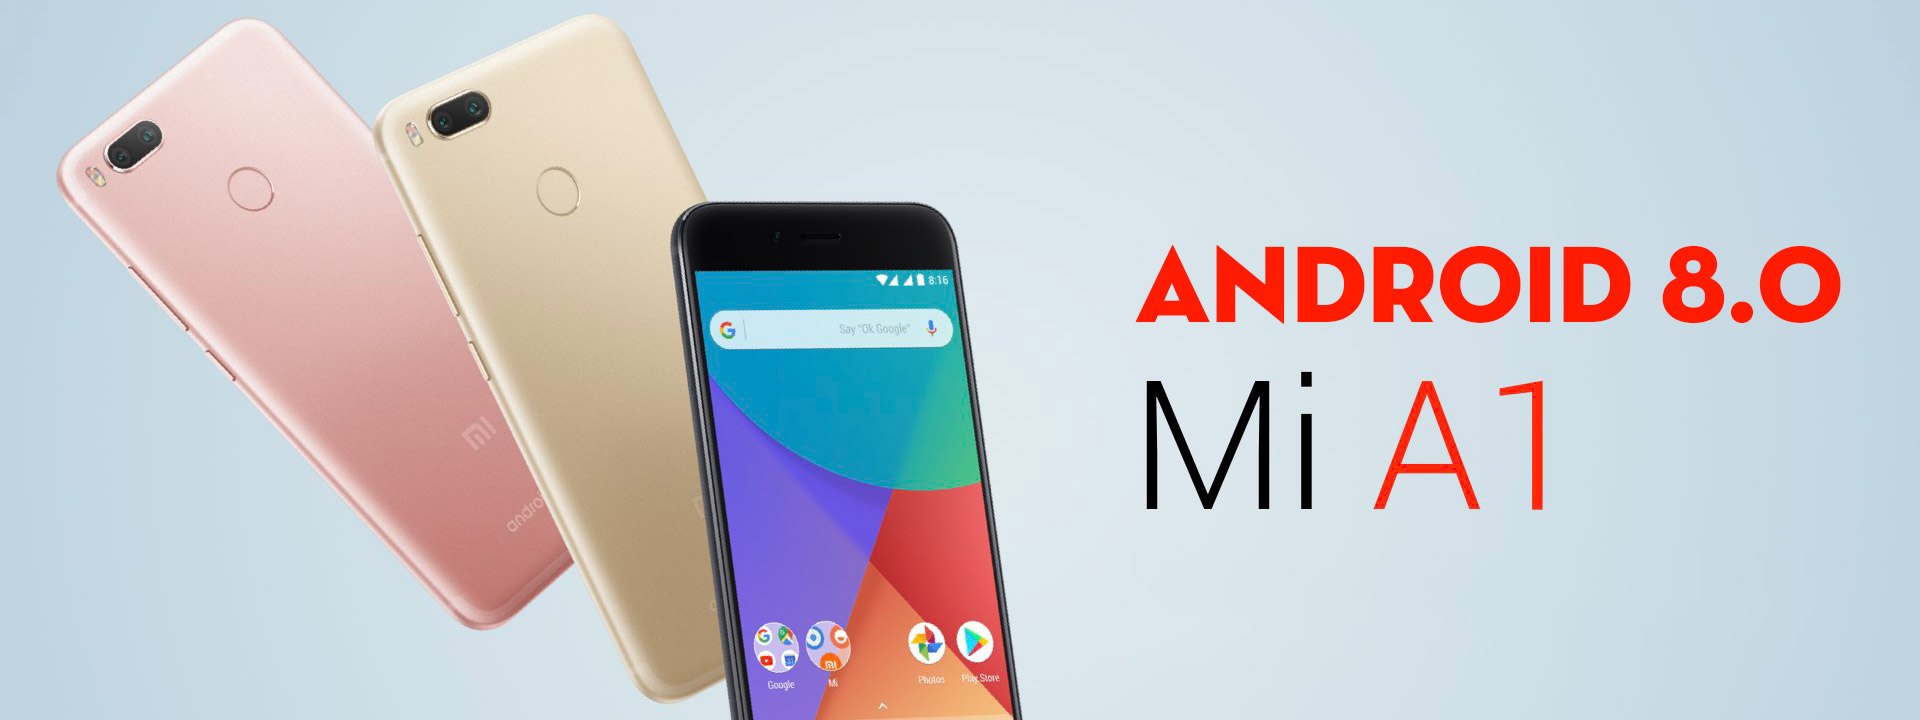 Xiaomi Mi A1 bắt đầu nhận update Android 8.0, anh em kiểm tra xem có chưa